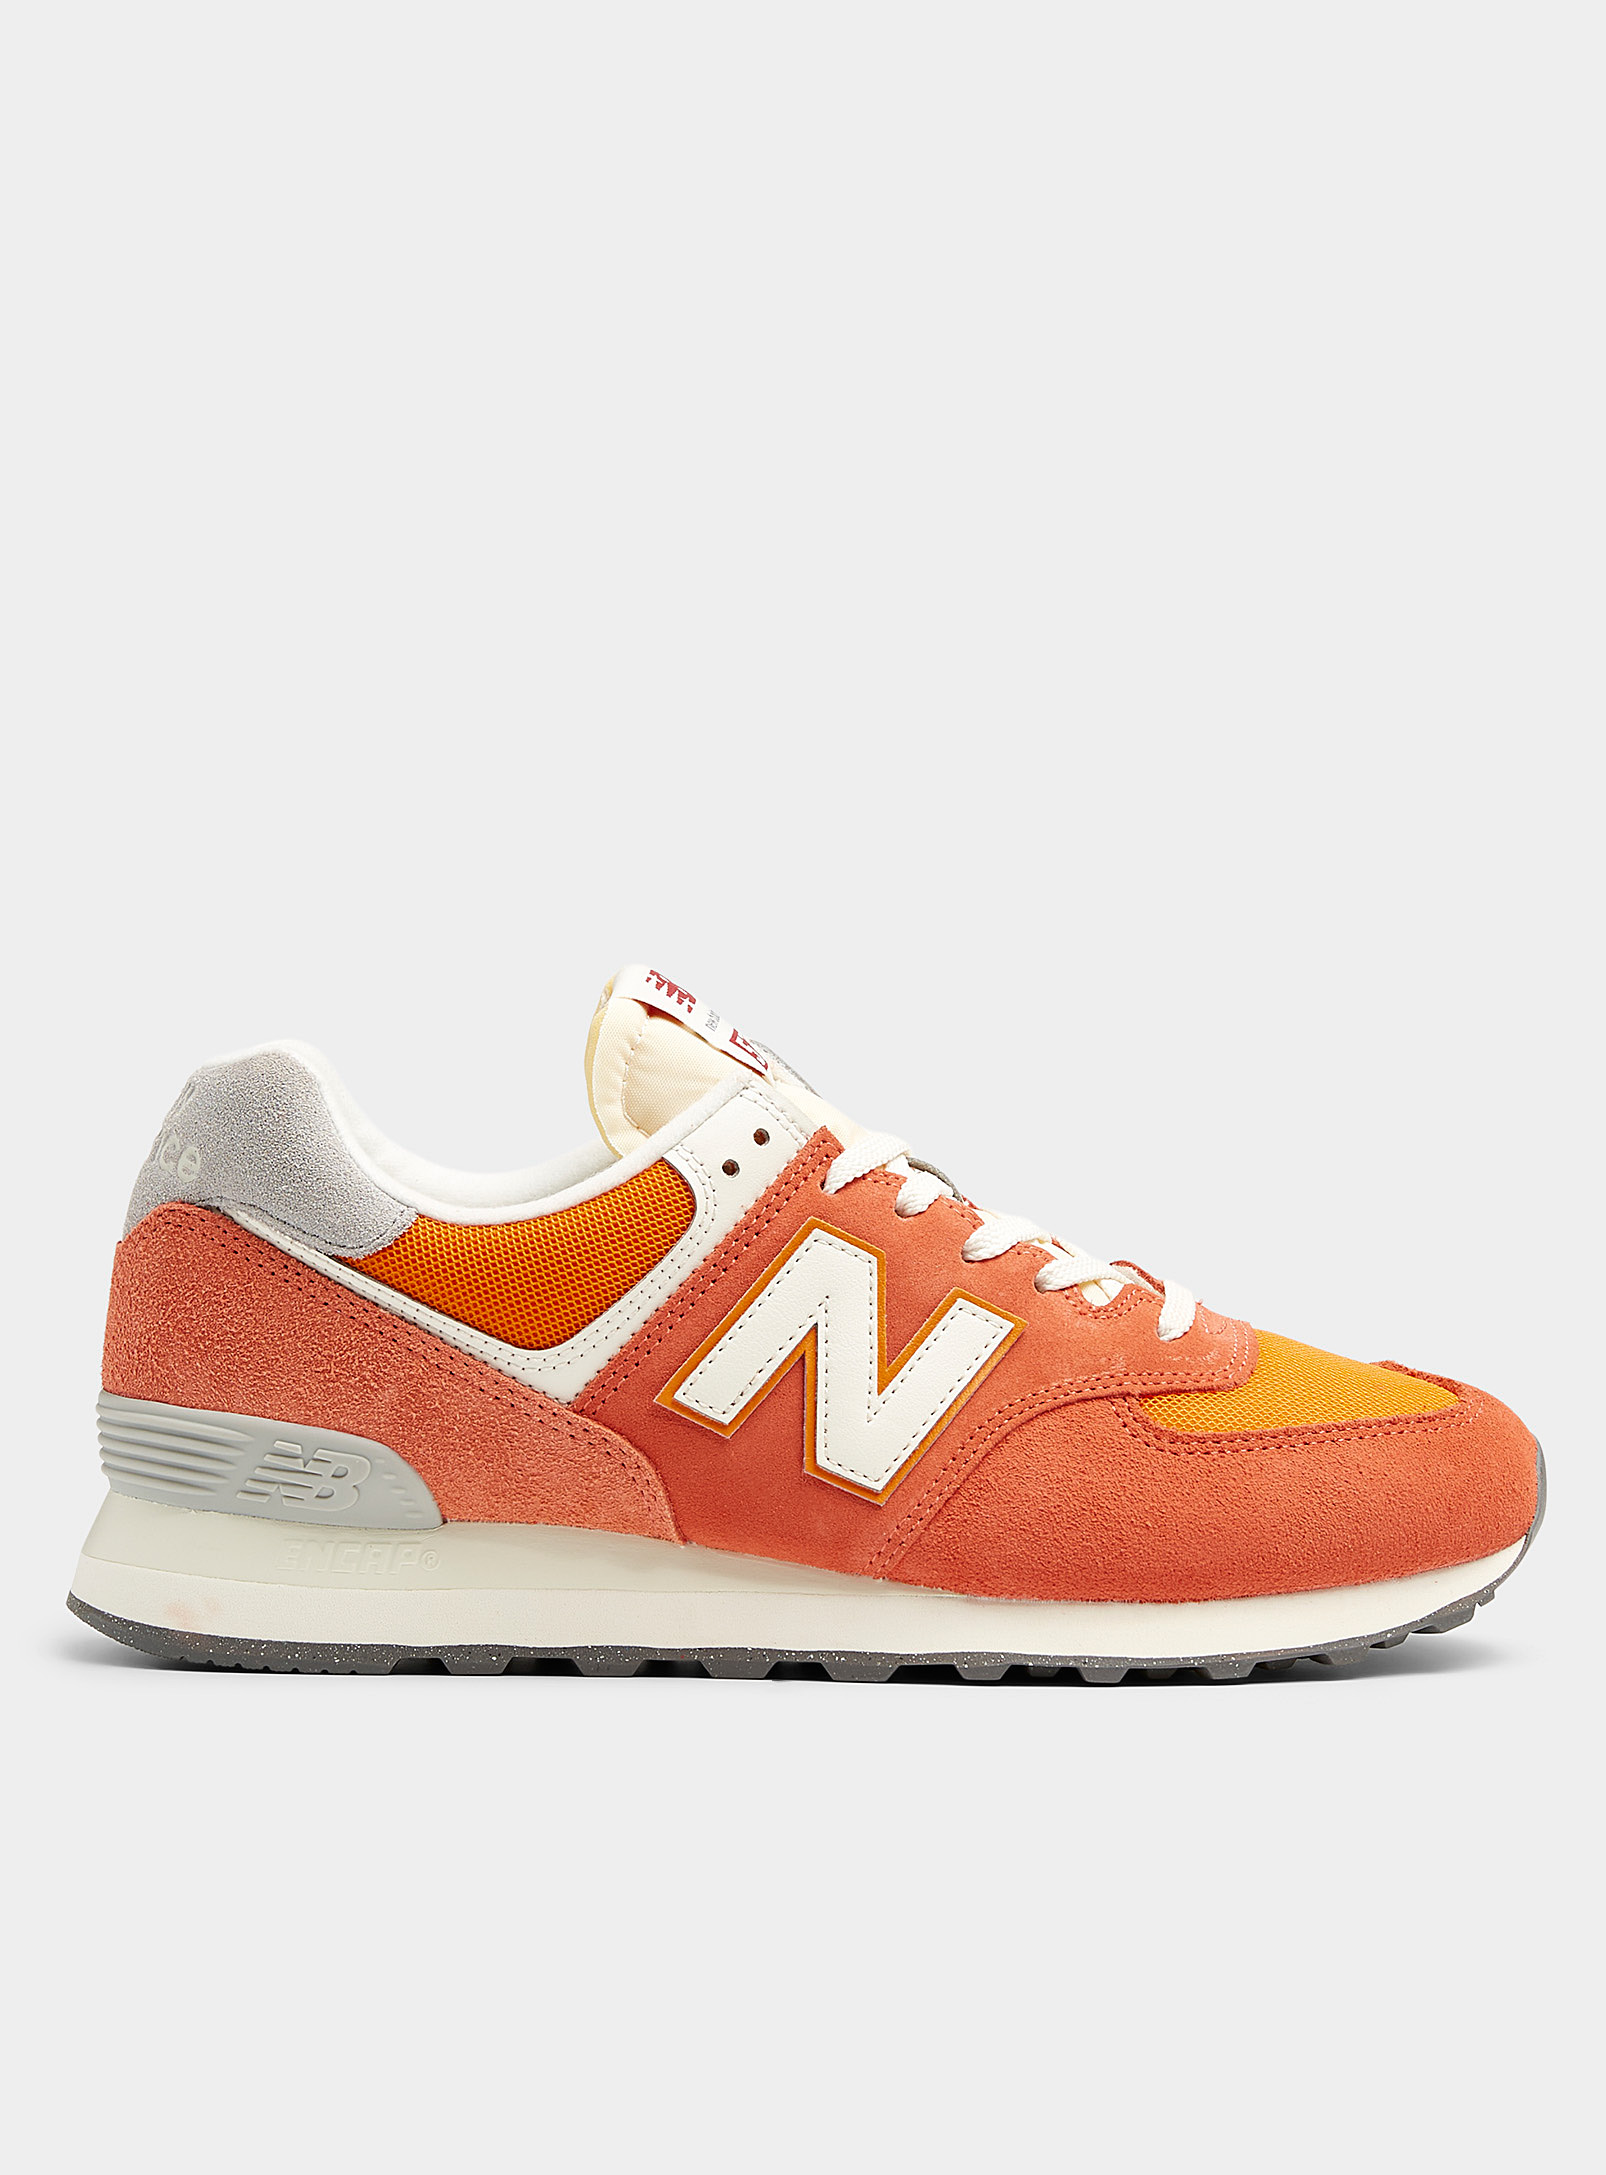 New Balance 574 Sneakers Men In Orange